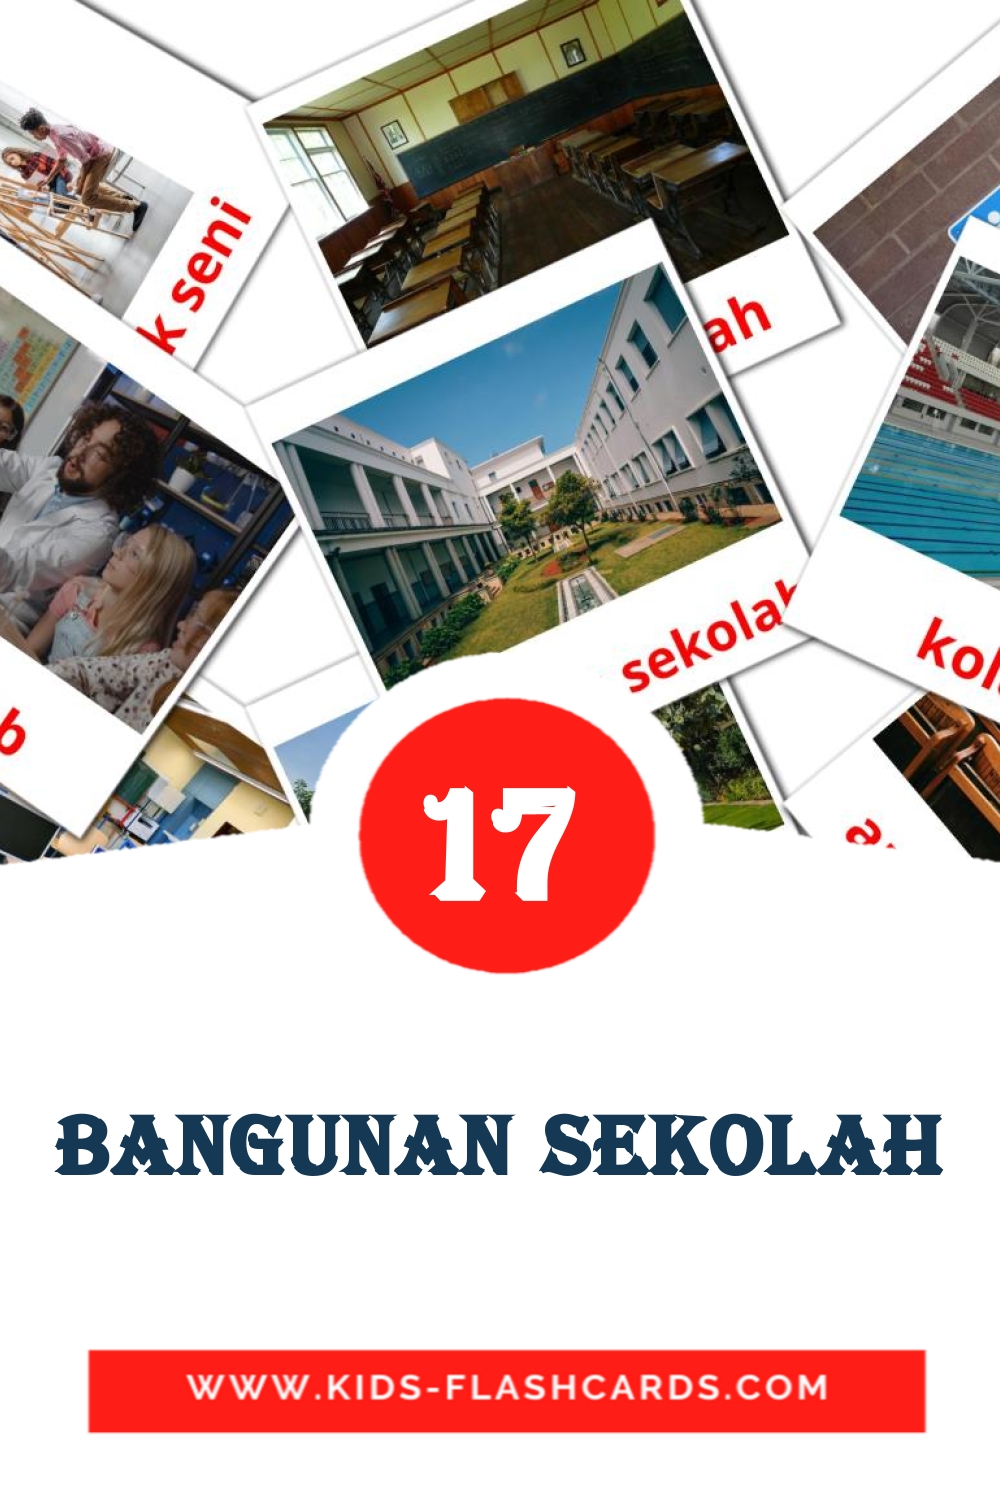 Bangunan Sekolah на малайском для Детского Сада (17 карточек)